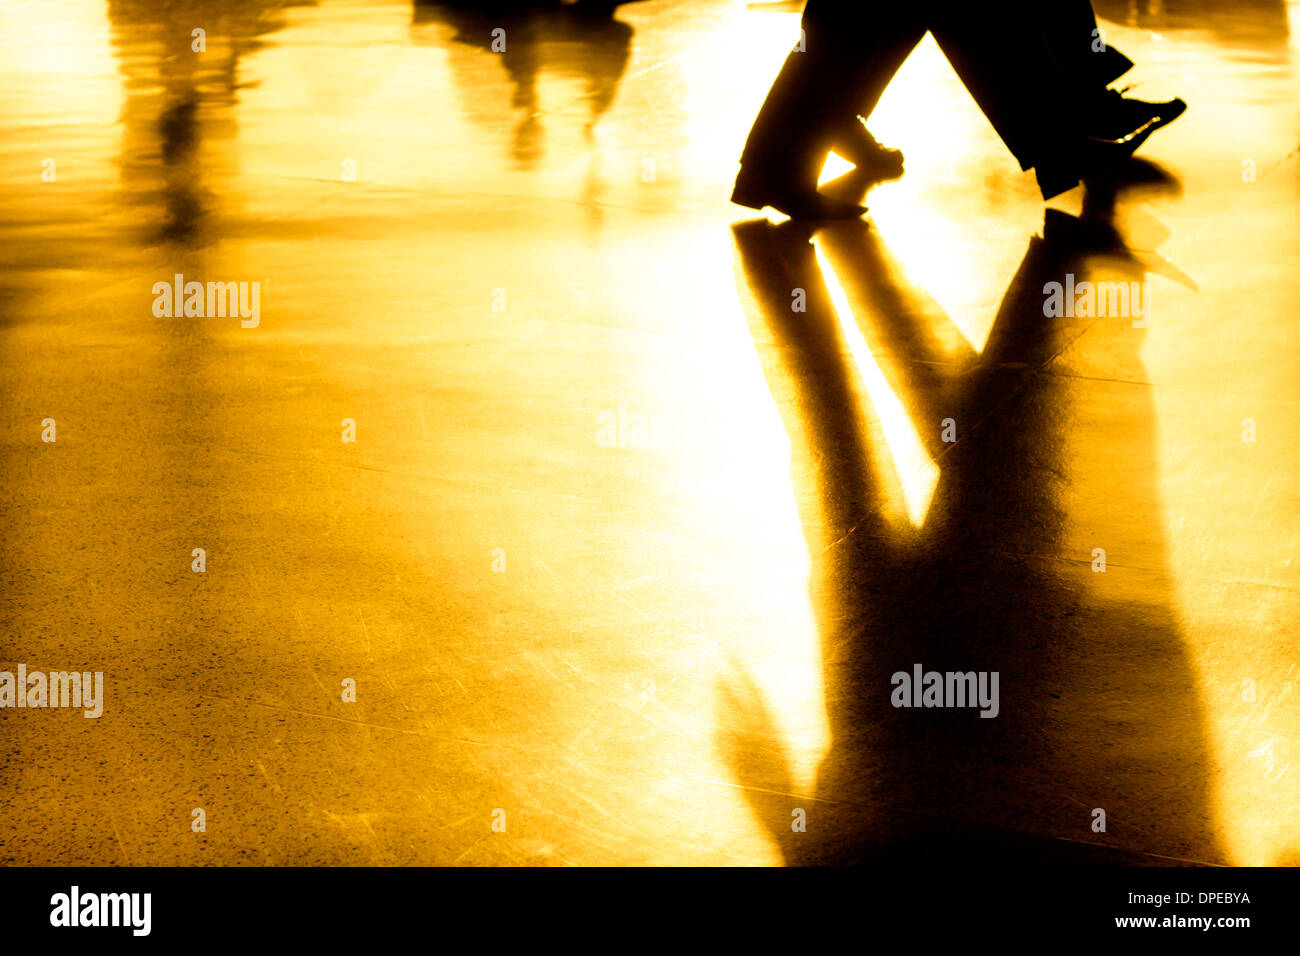 Astratto foto creative di persone sagome di persone a piedi e le loro ombre su sfondo dorato Foto Stock